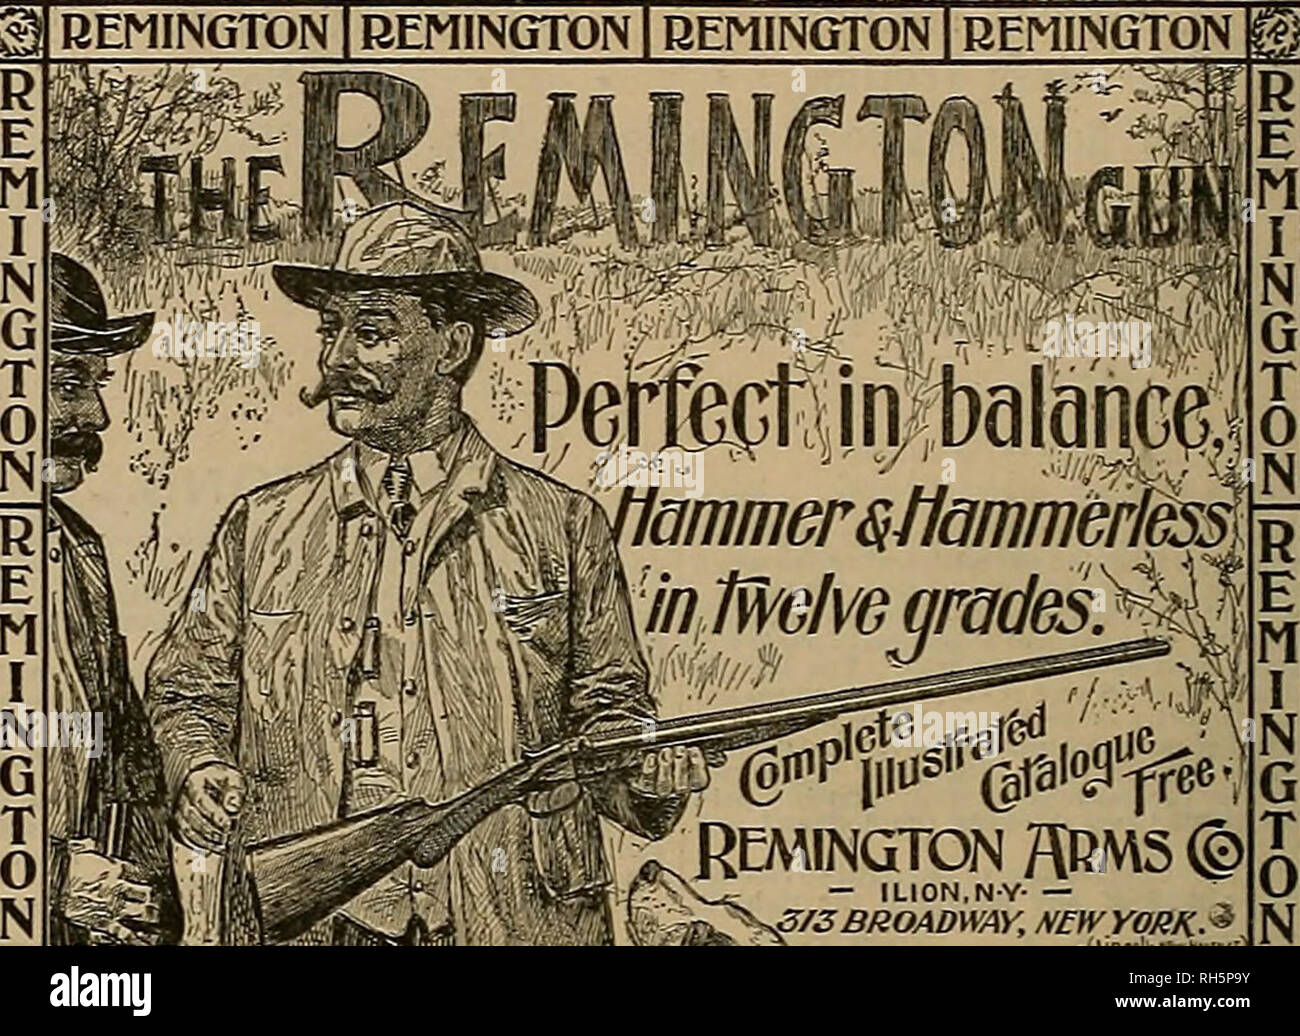 Zuchter Und Sportler Pferde Remington Waffen C Ilion Ny 3 Sbroadway Newyork H Remington Remington Remington Remington Z B Remington Waffen Verkauft Die Von Allen Gewehr Handler